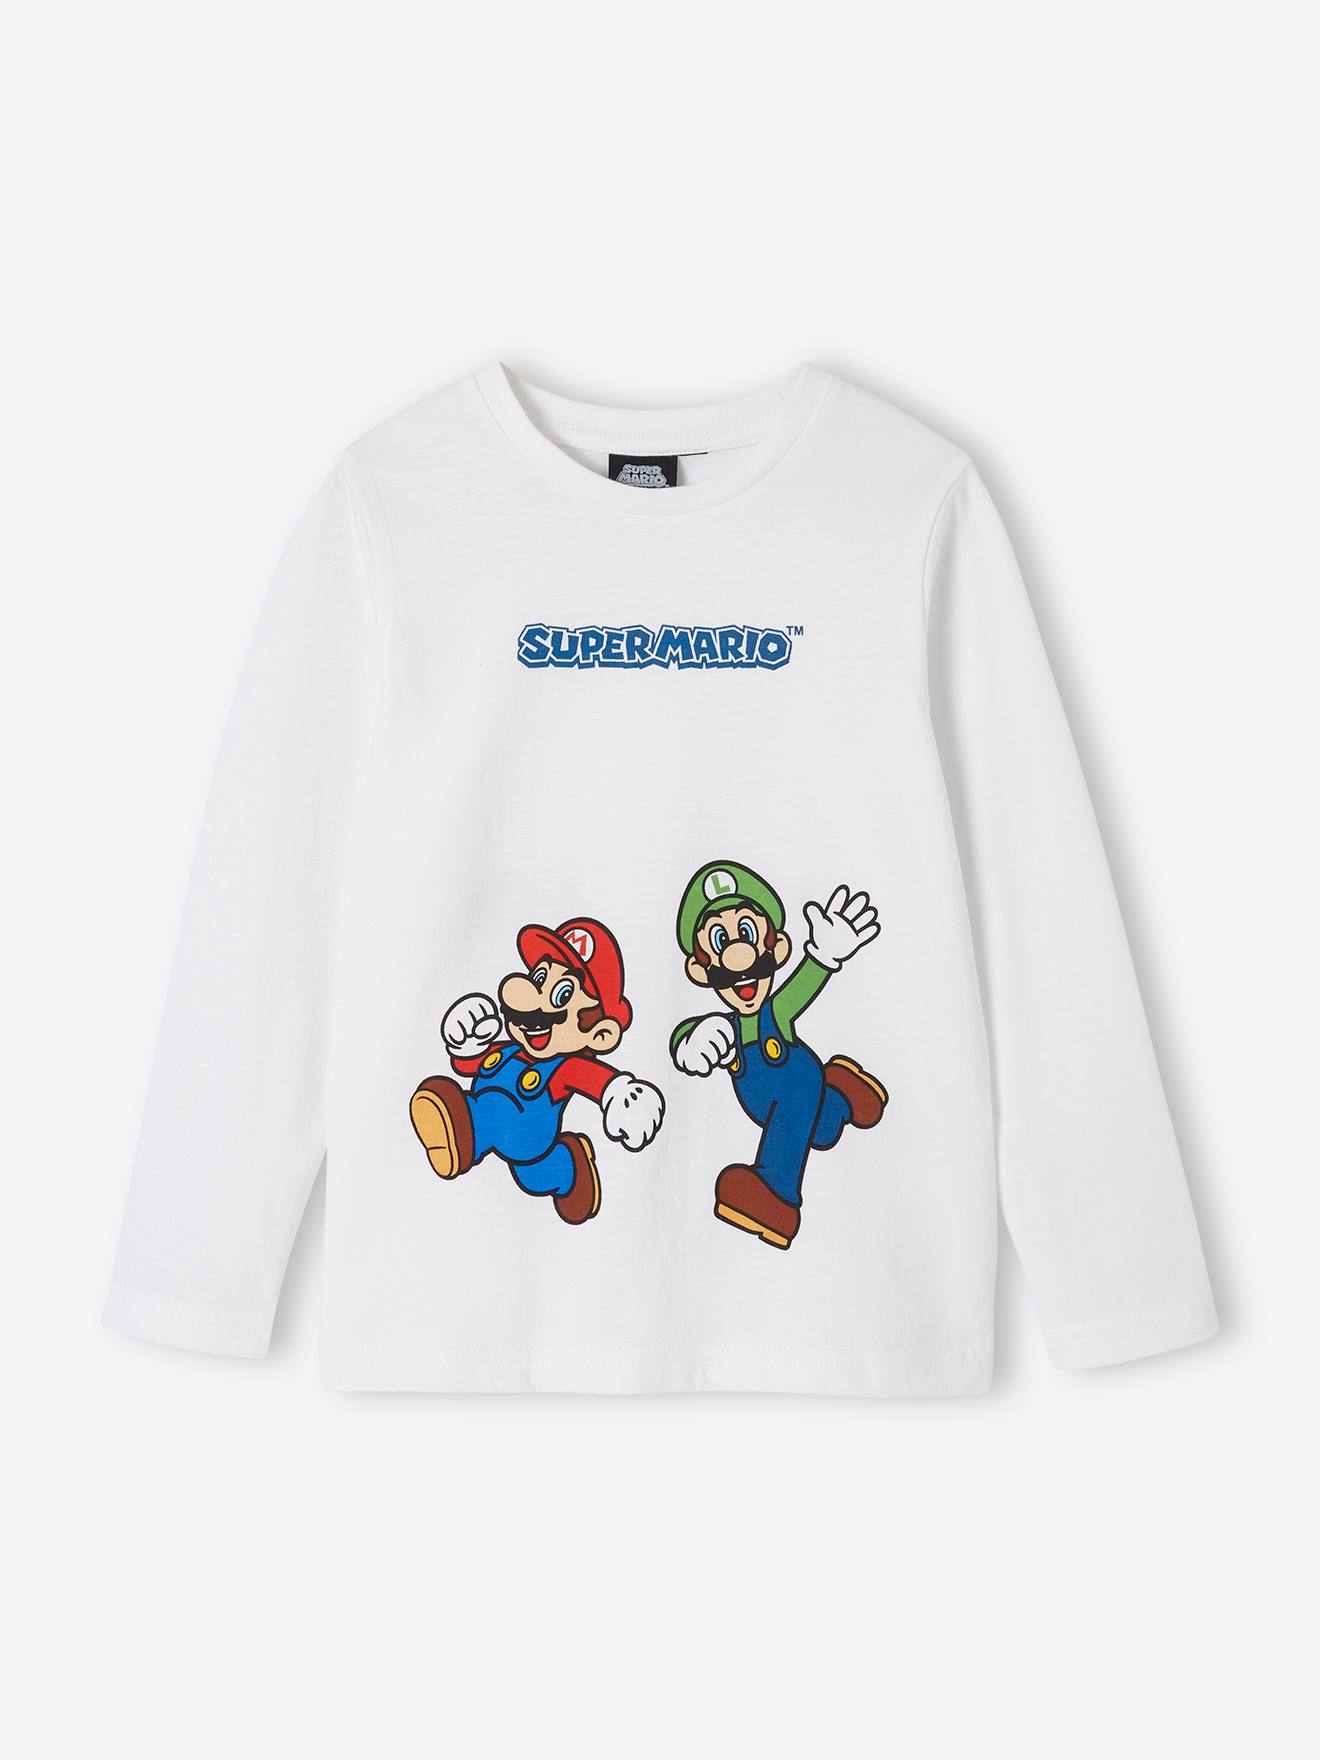 Long Sleeve Mario & Luigi(r) Top for Boys white